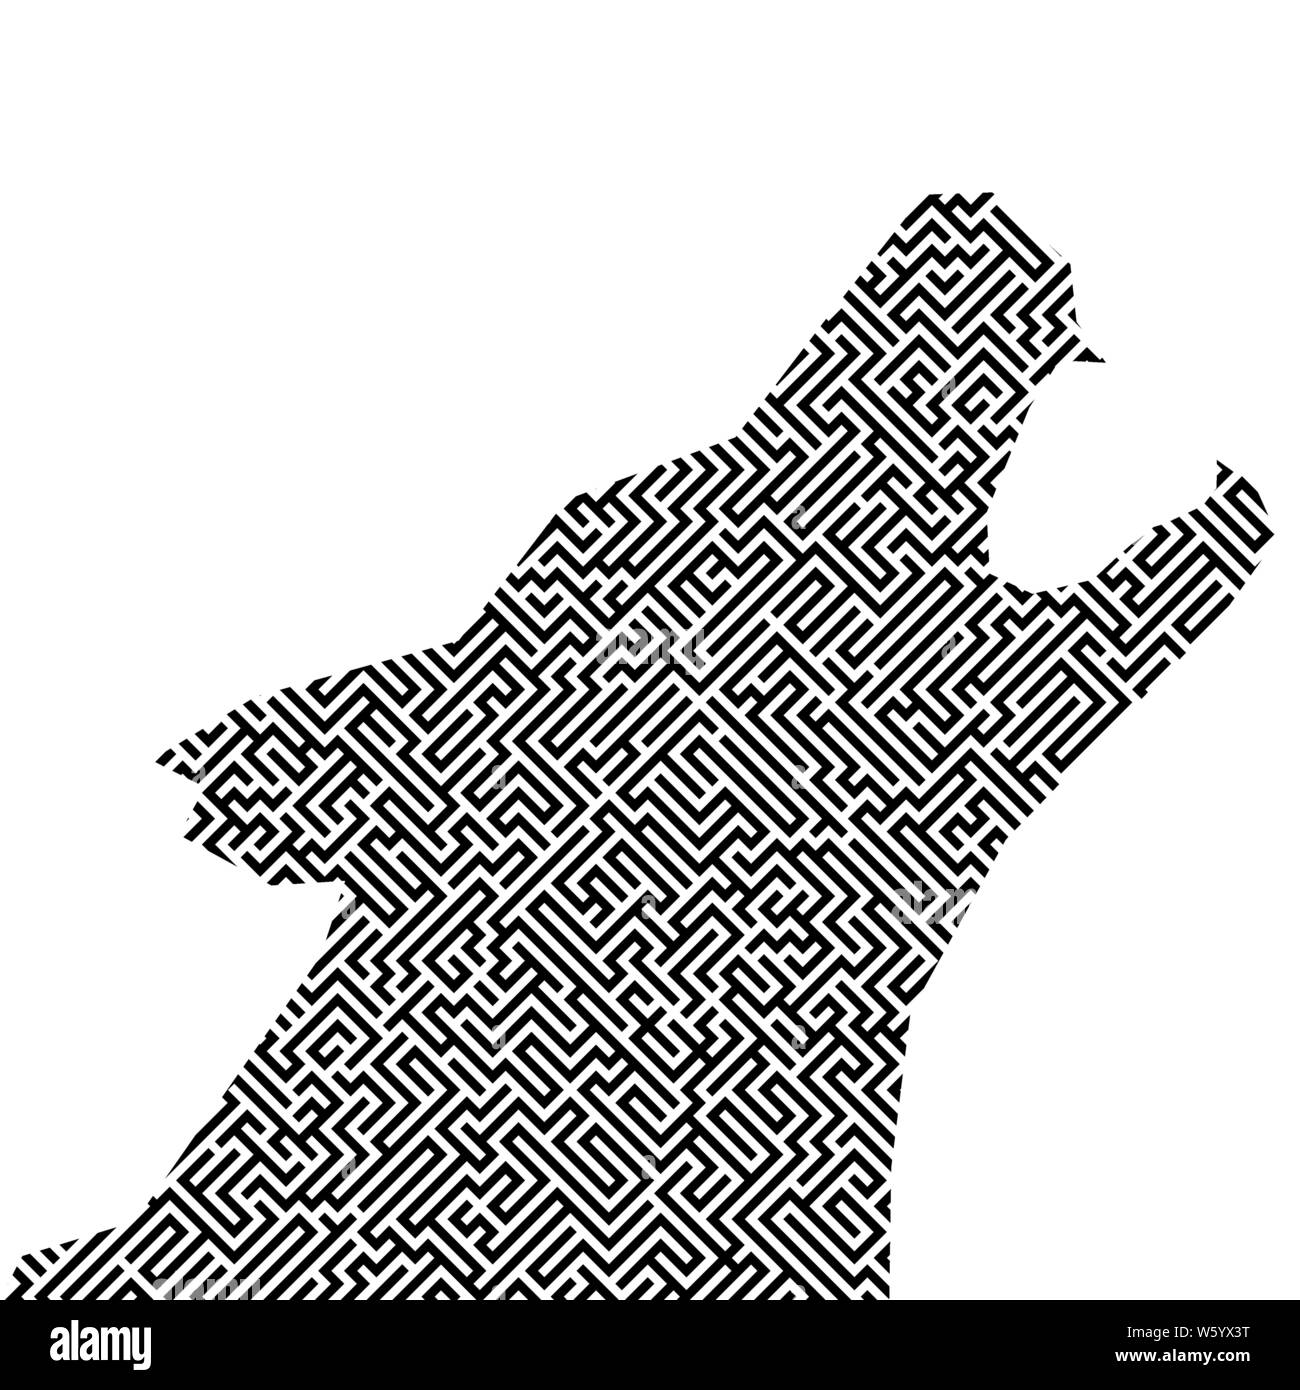 Vector Illustration. Kopf wolf Silhouette mit Labyrinth oder Irrgarten Textur. Isoliert. Stock Vektor